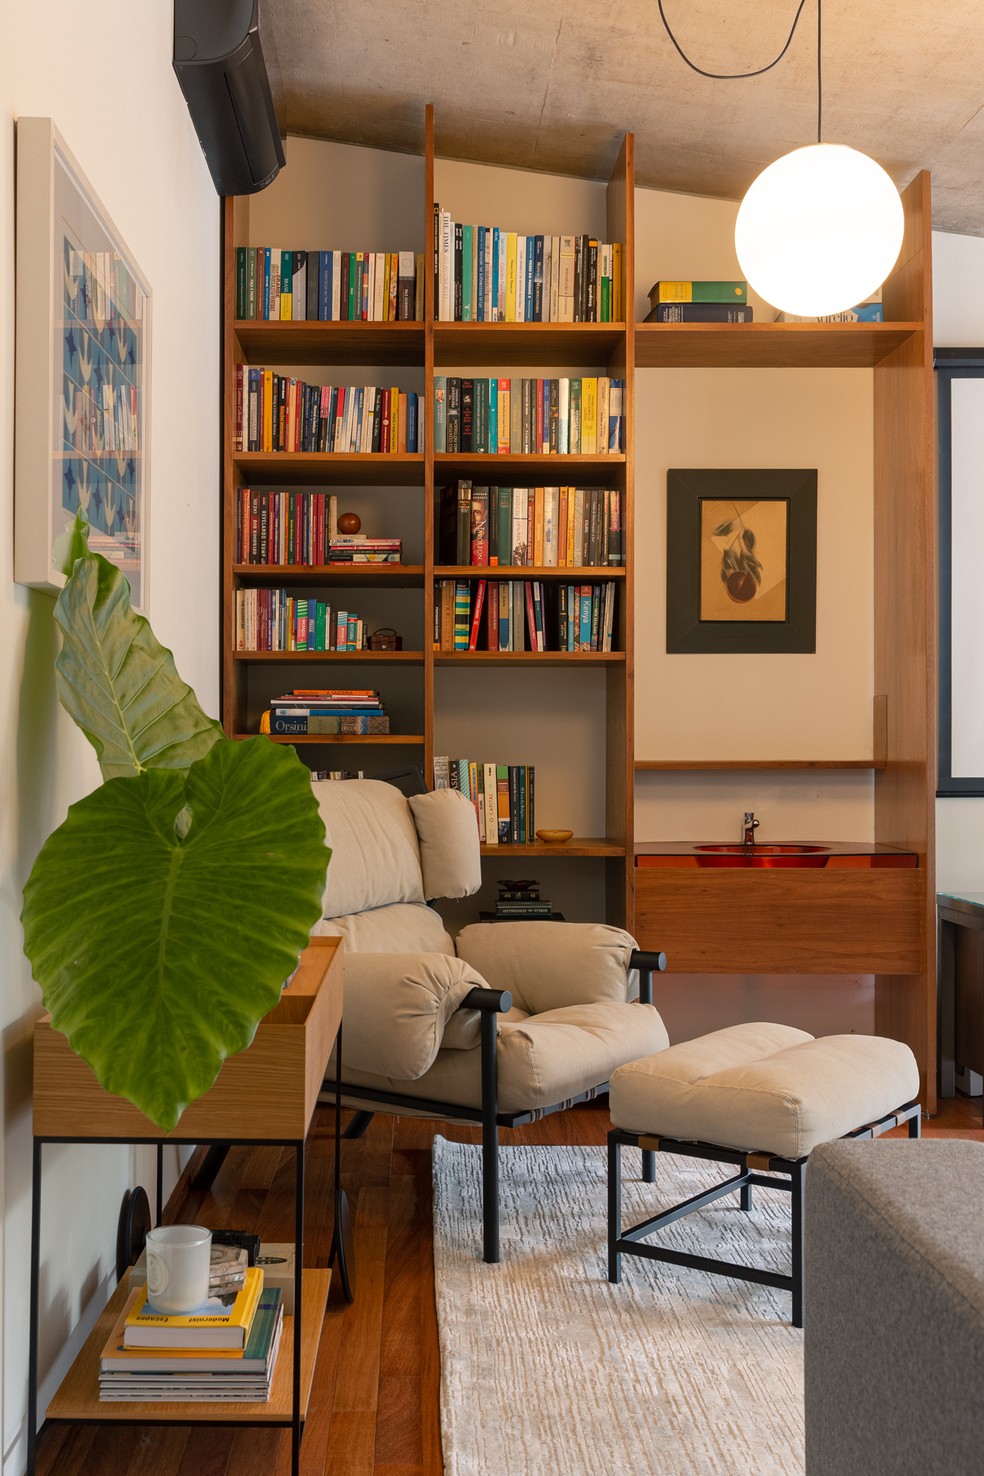 Em uma das salas íntimas, as arquitetas montaram um pequeno home office com biblioteca — Foto: Brenda Pontes